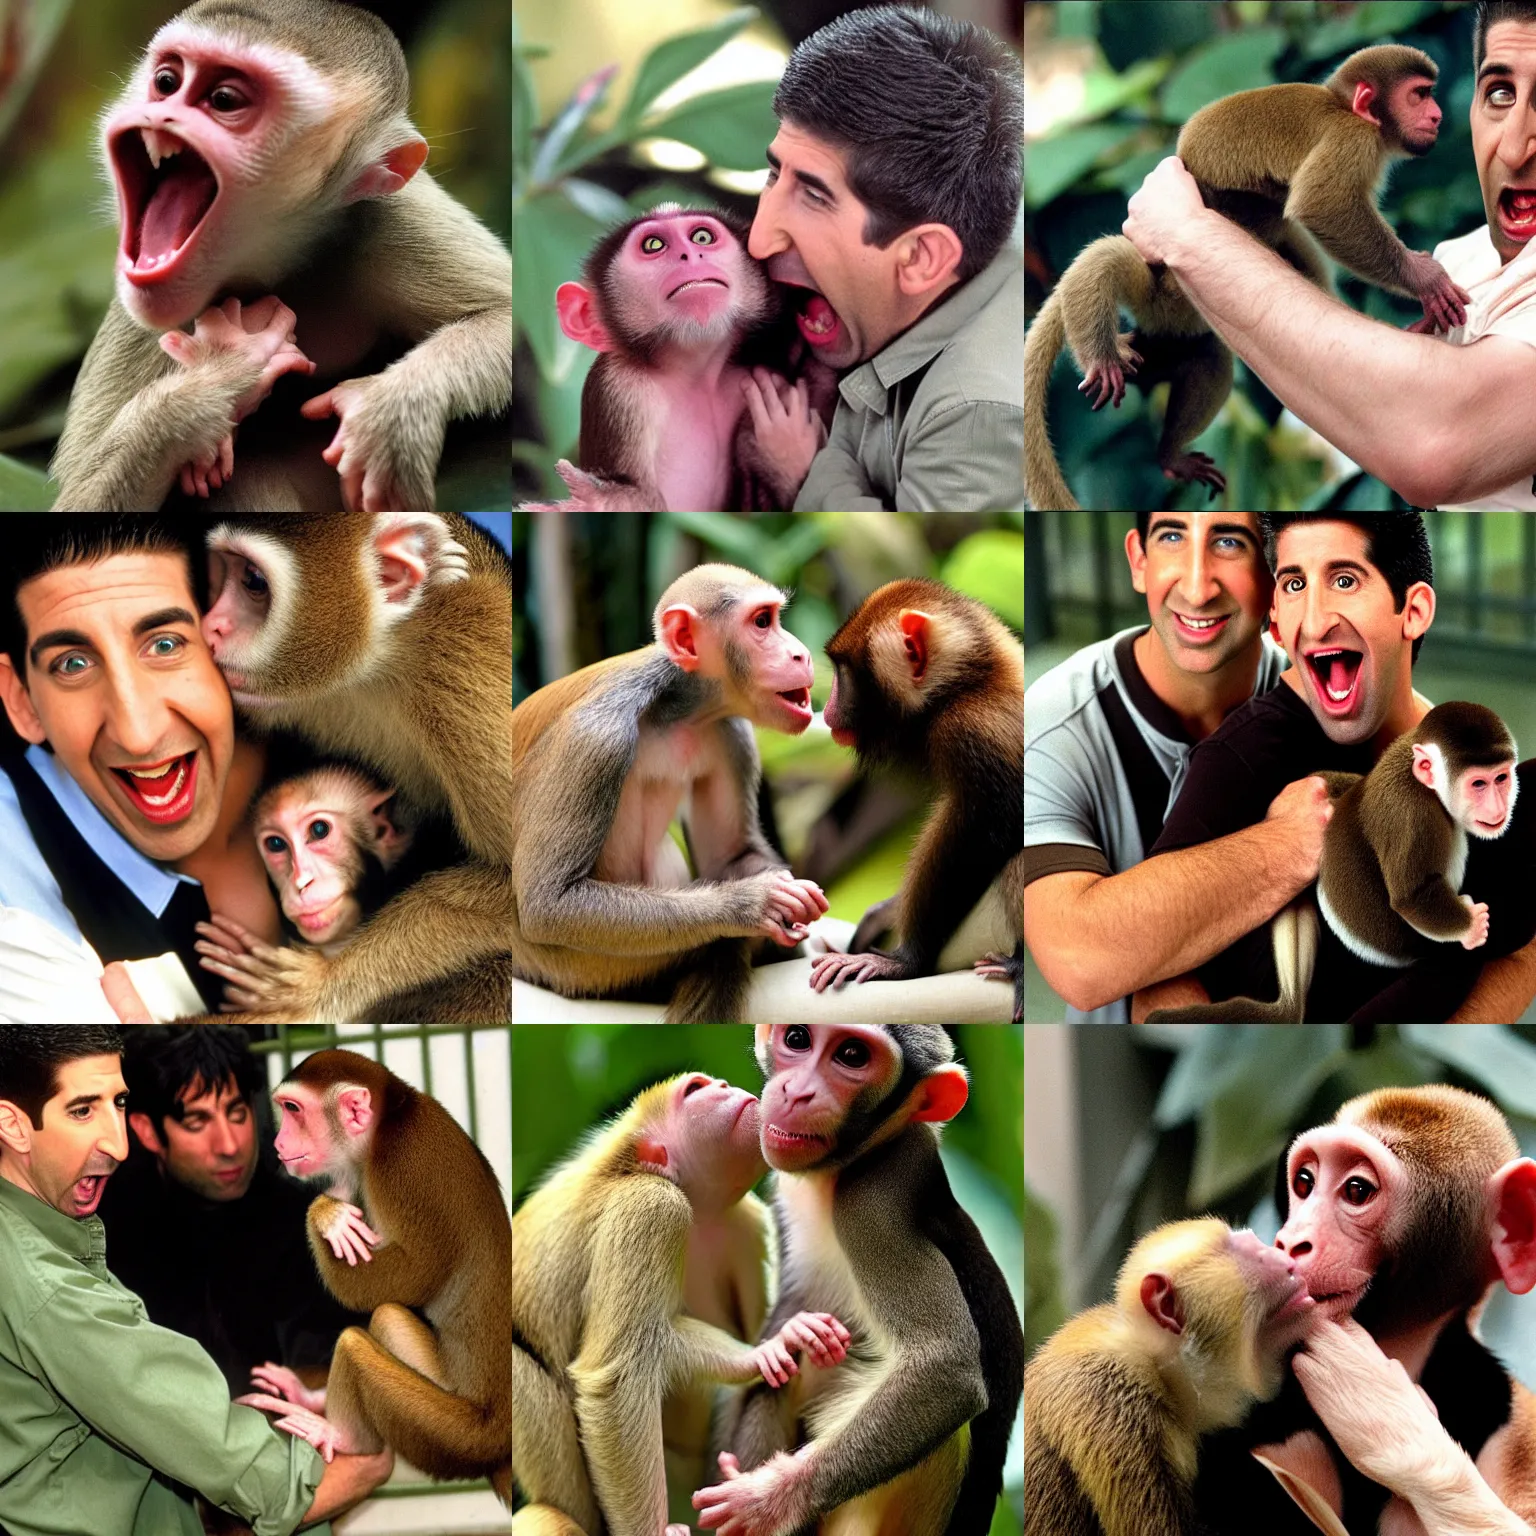 Prompt: ross geller being bitten by a capuchin monkey, ross geller screaming,